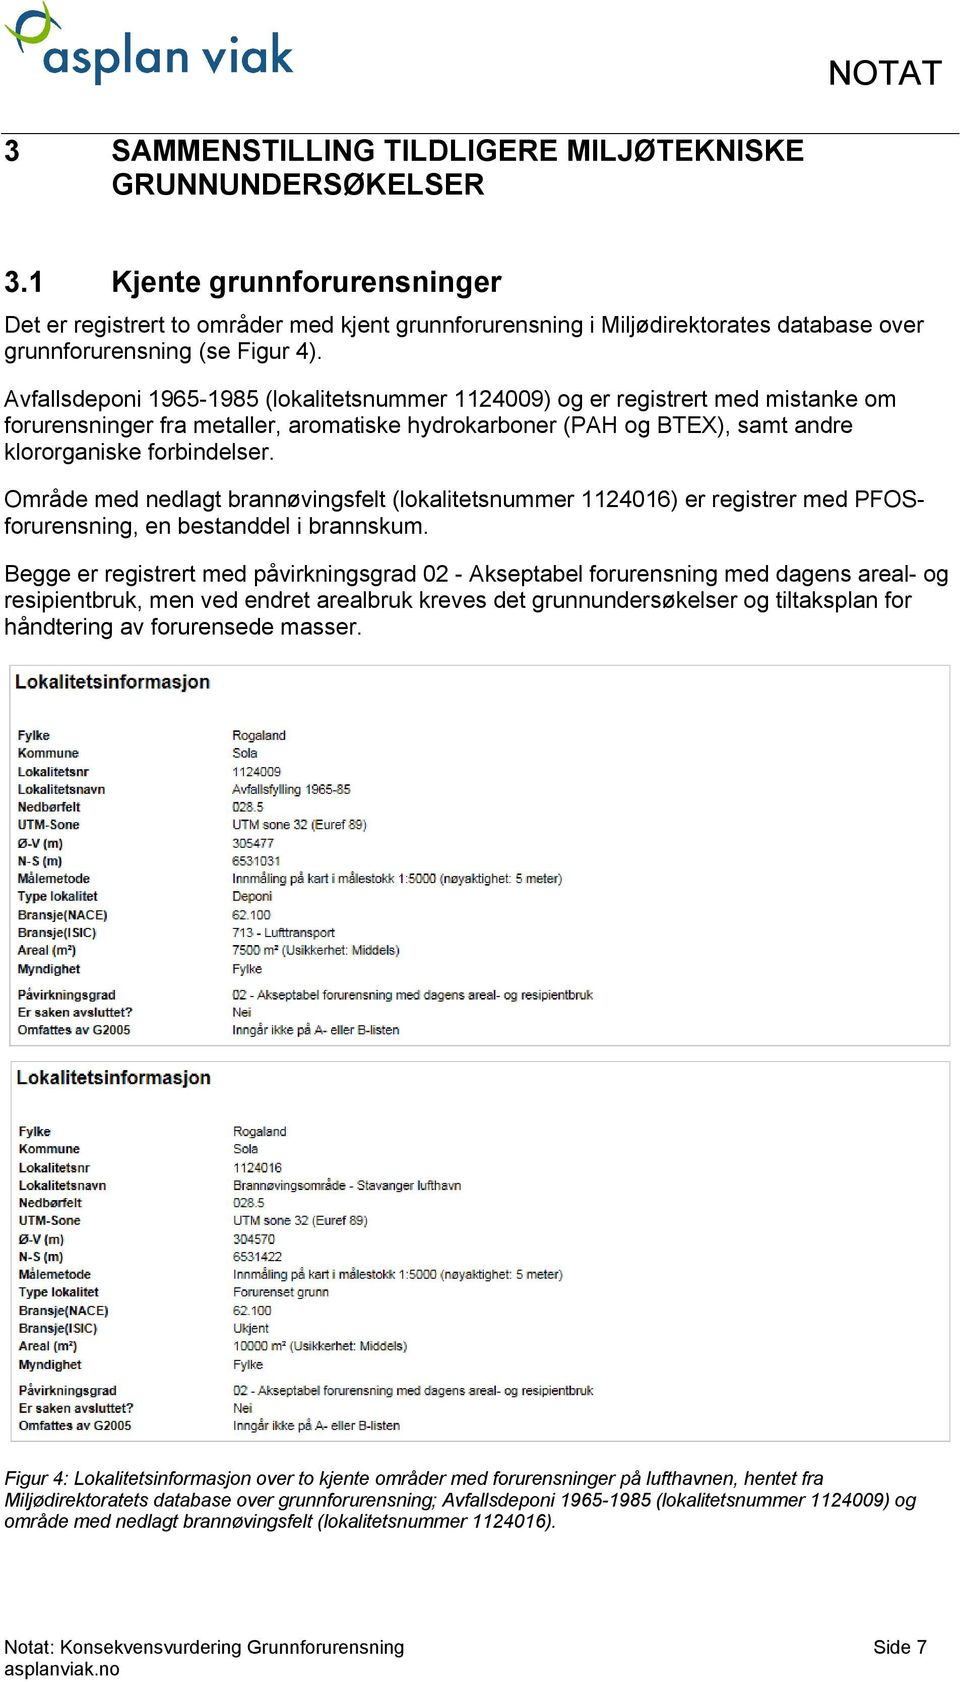 Avfallsdeponi 1965-1985 (lokalitetsnummer 1124009) og er registrert med mistanke om forurensninger fra metaller, aromatiske hydrokarboner (PAH og BTEX), samt are klororganiske forbielser.